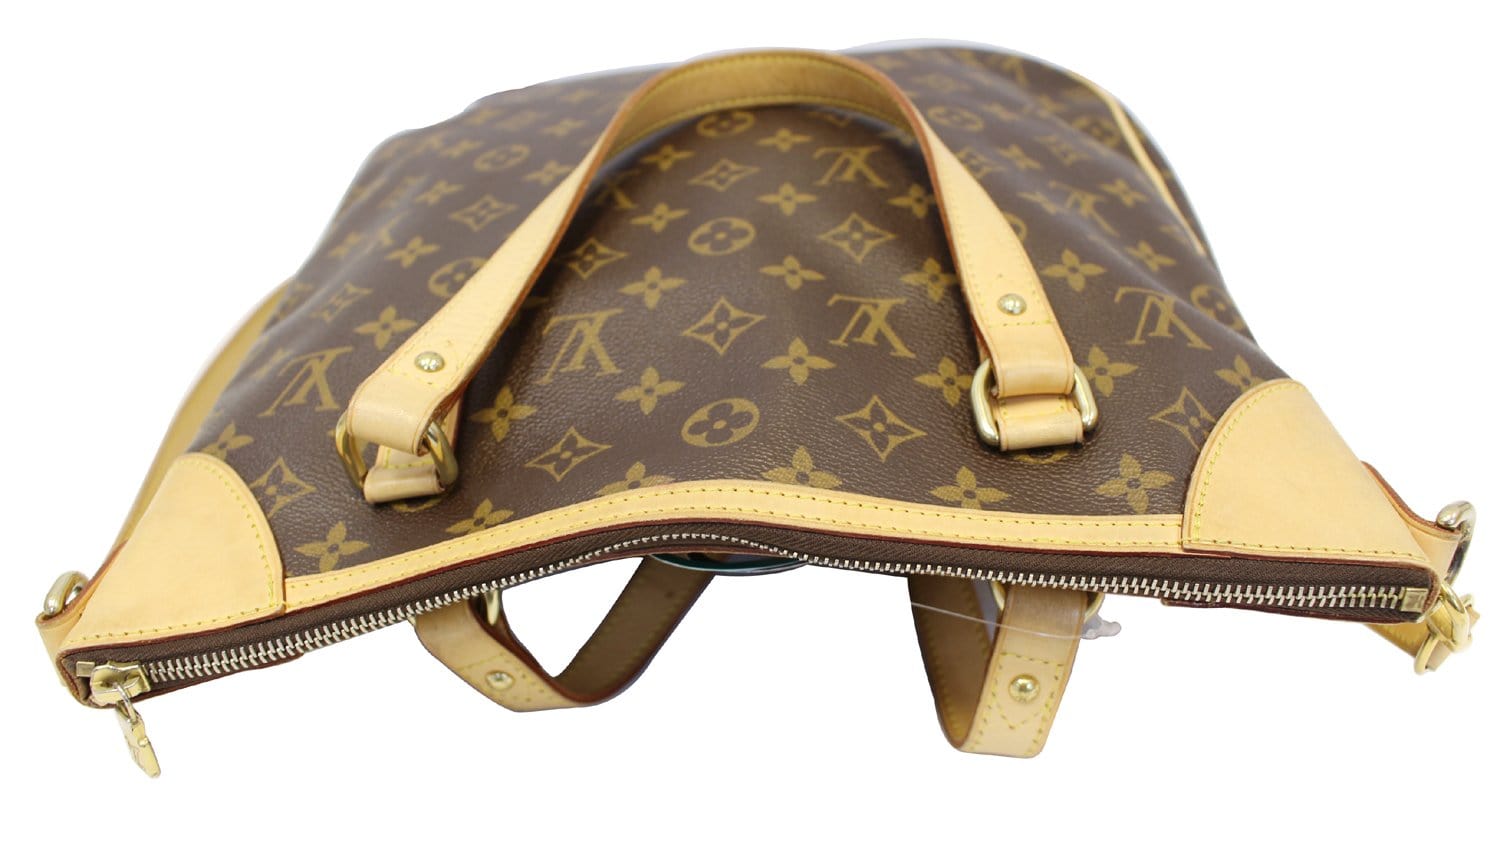 Louis Vuitton, Bags, Louis Vuitton Chantilly Gm Monogram Canvas Monogram  M5232 Shoulder Bag